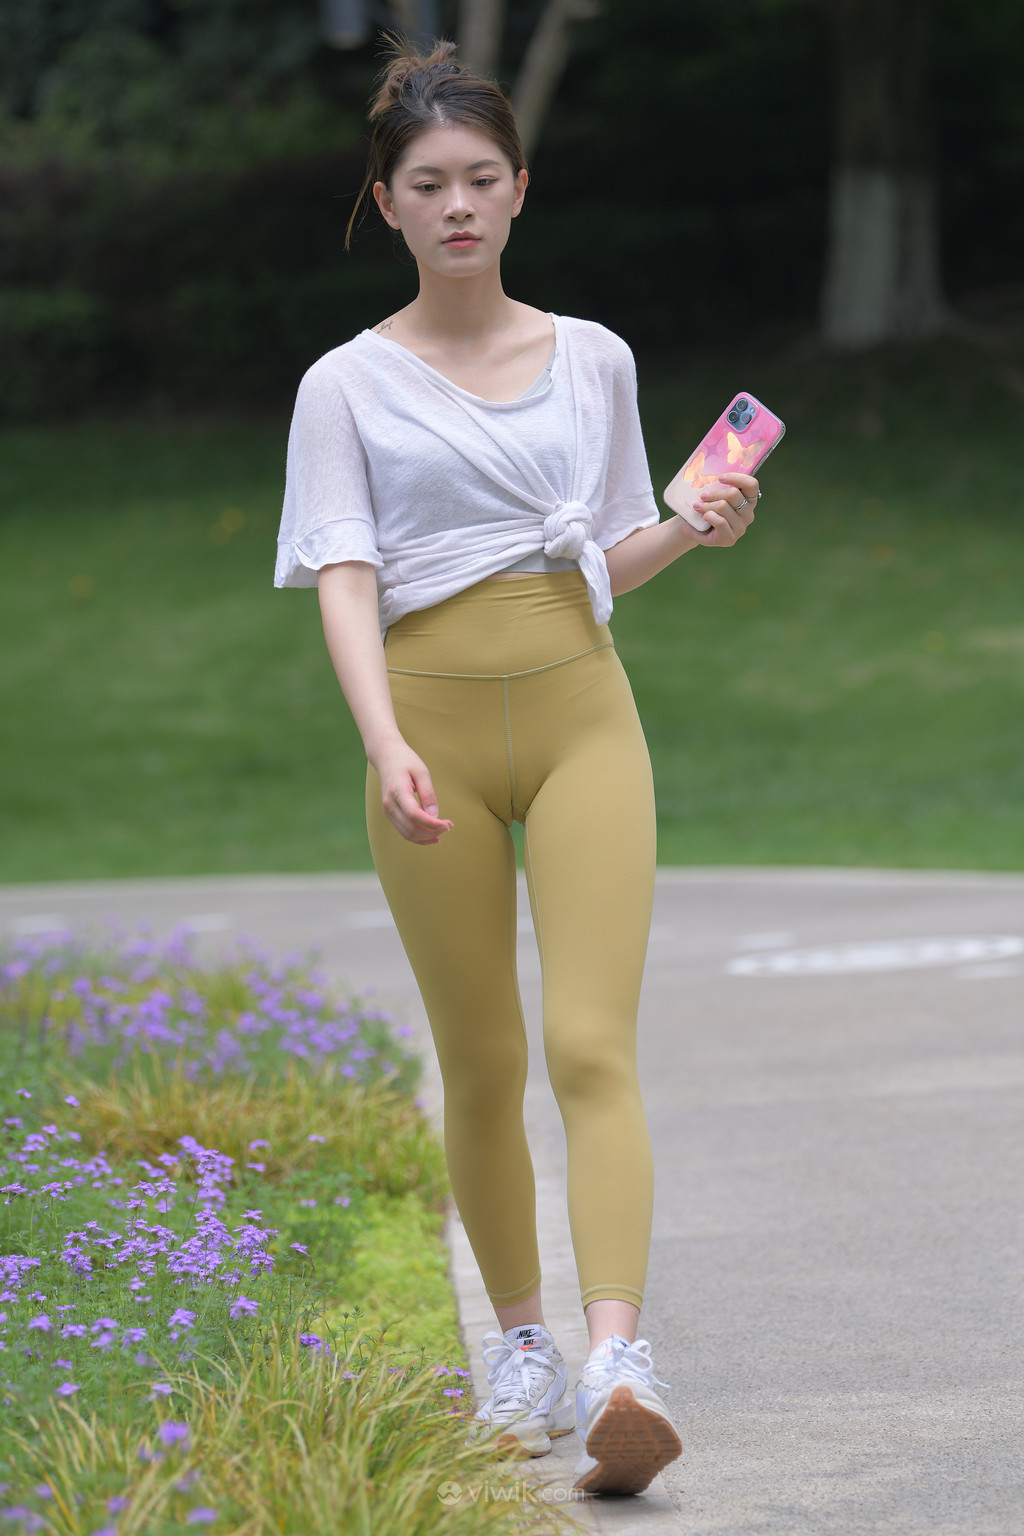 国产精品素颜系列街拍紧身裤瑜伽美女图片